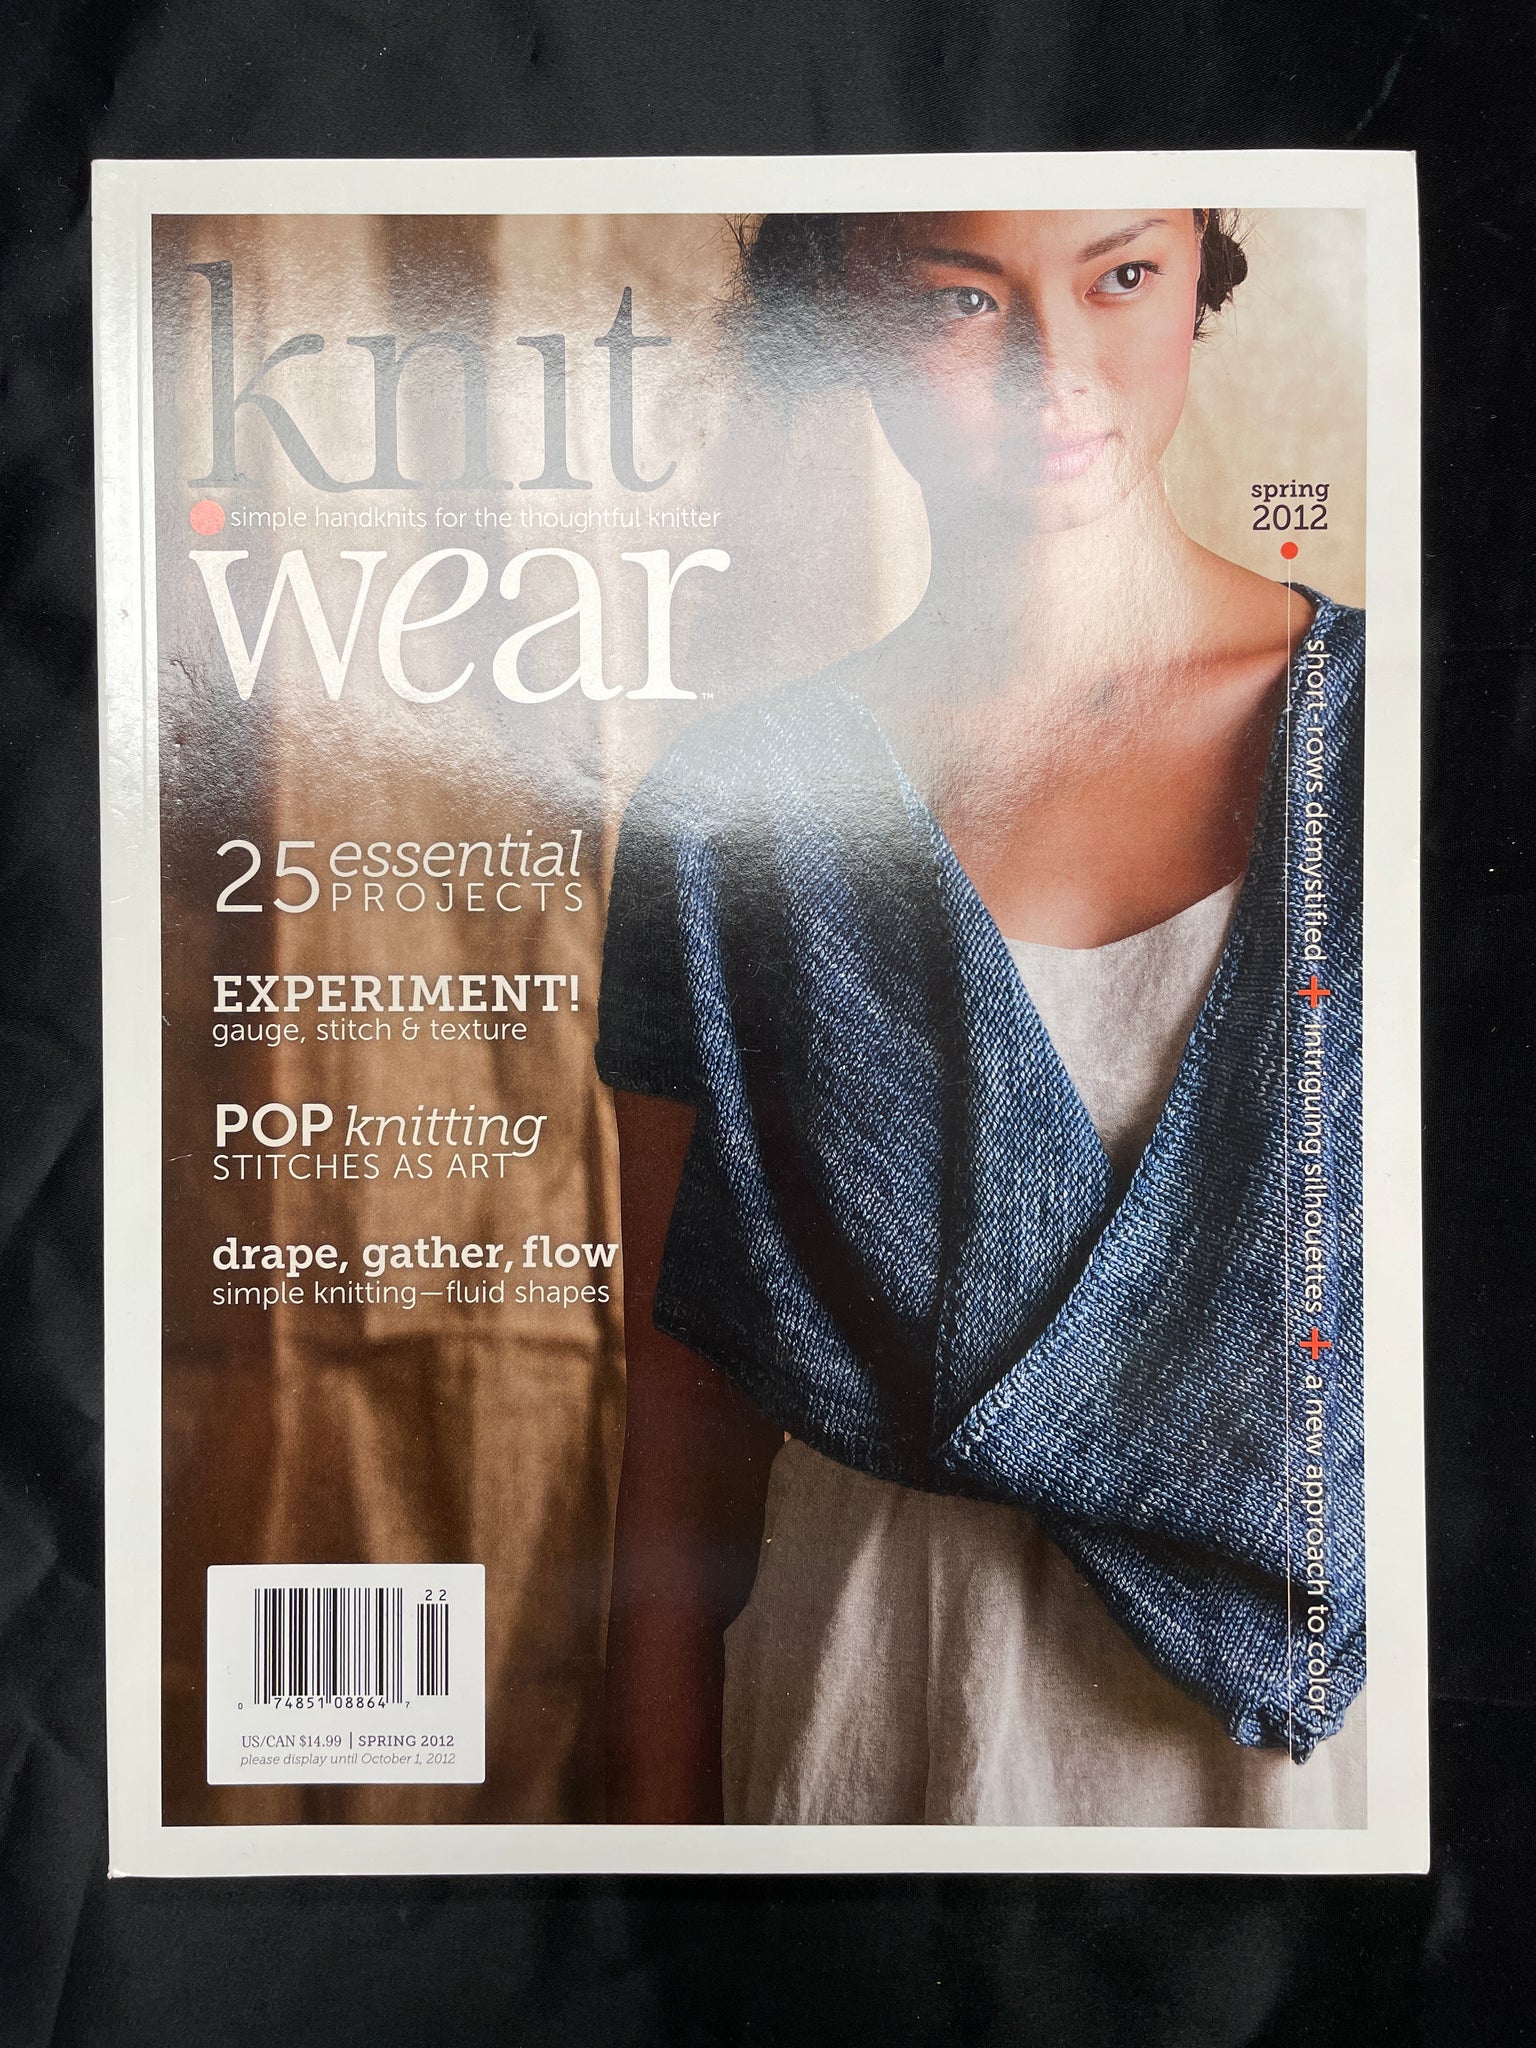 2012 and 2013 Knitting Magazine Bundle - "Knit Wear"